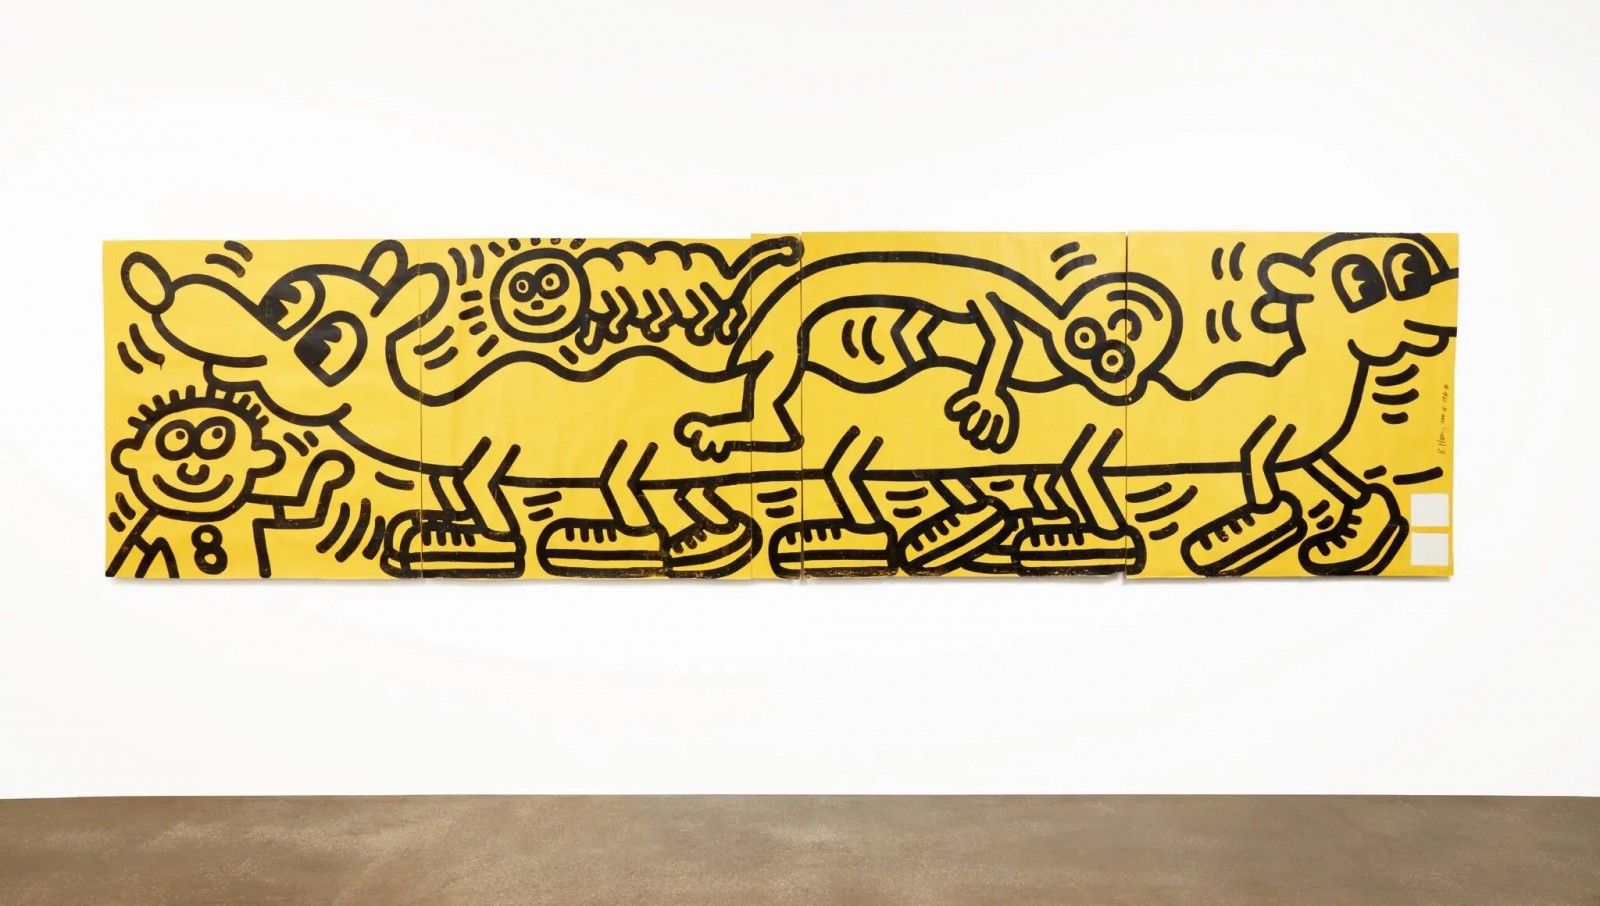 Một bức tranh của cố nghệ sĩ Keith Haring vừa được đấu giá hơn 23 tỷ đồng